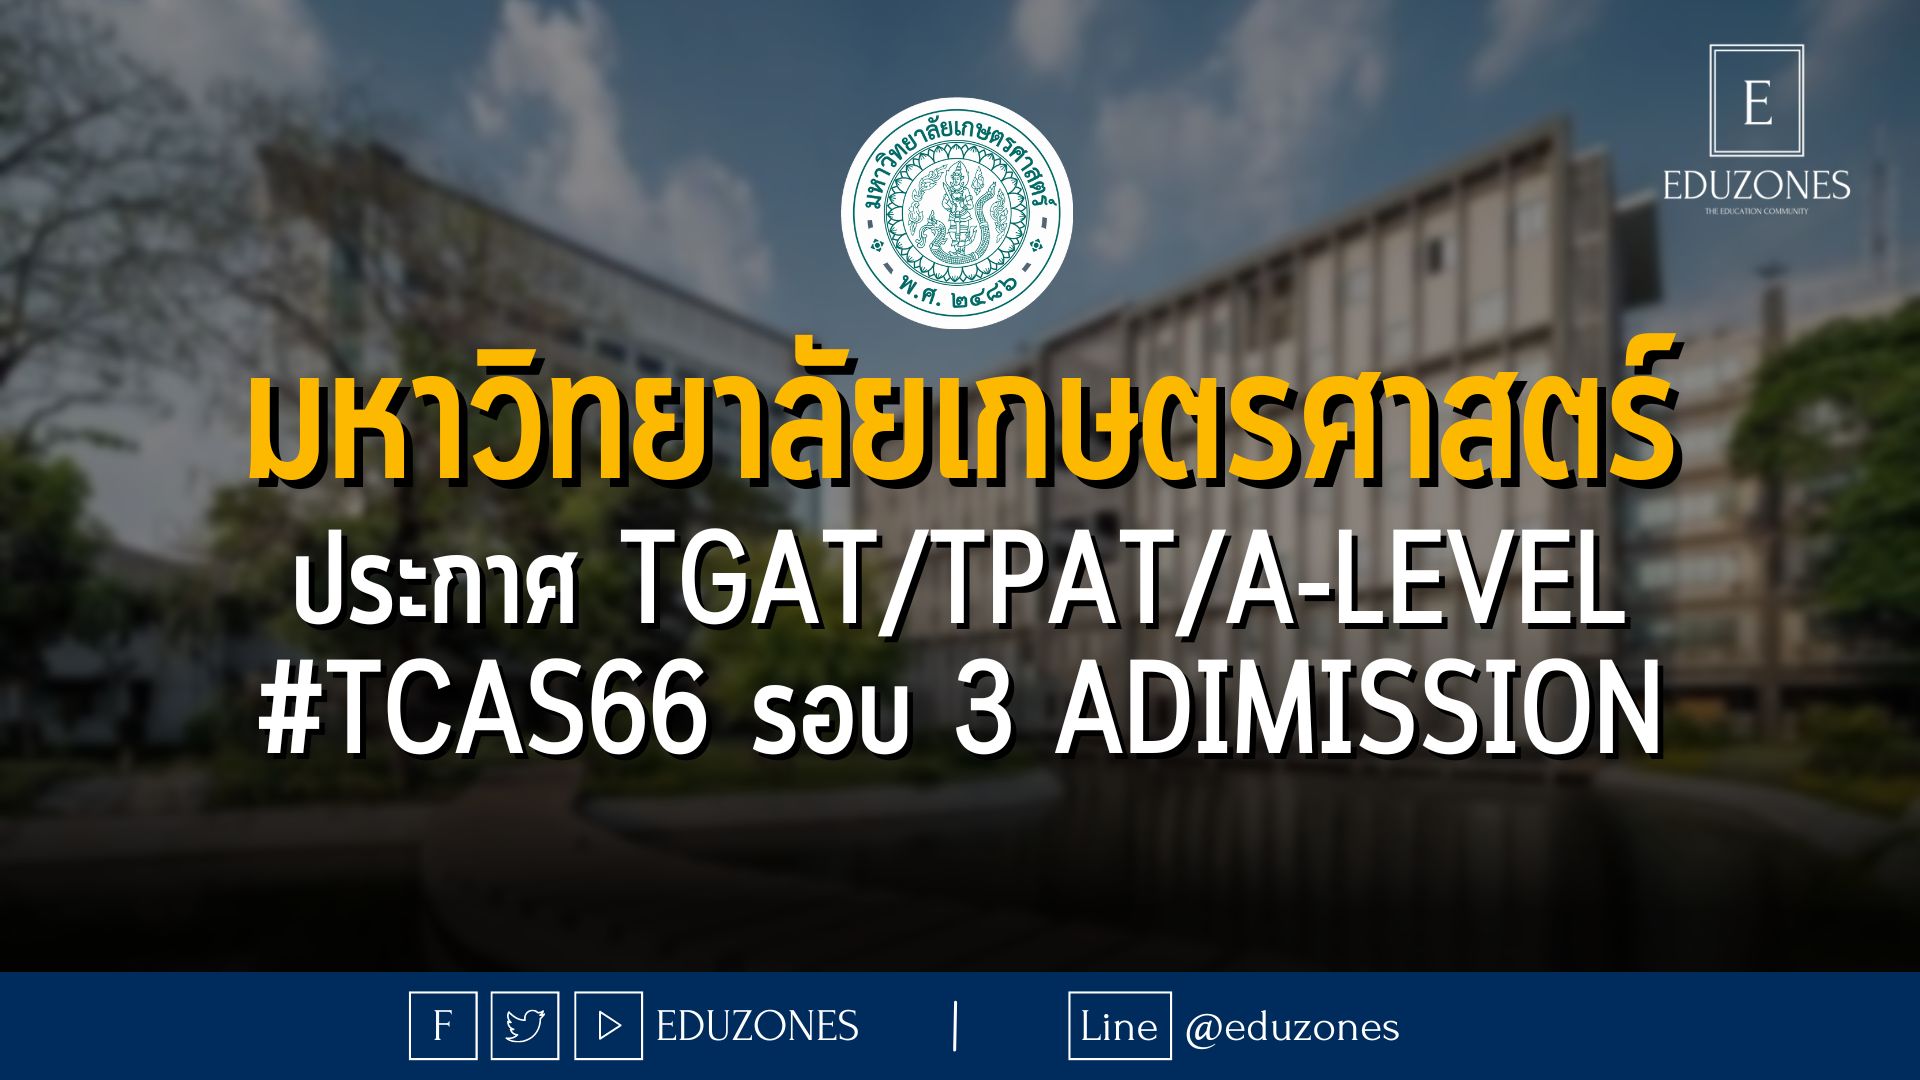 มหาวิทยาลัยเกษตรศาสตร์ ประกาศ TGAT/TPAT/A-LEVEL #TCAS66 รอบ 3 adimission